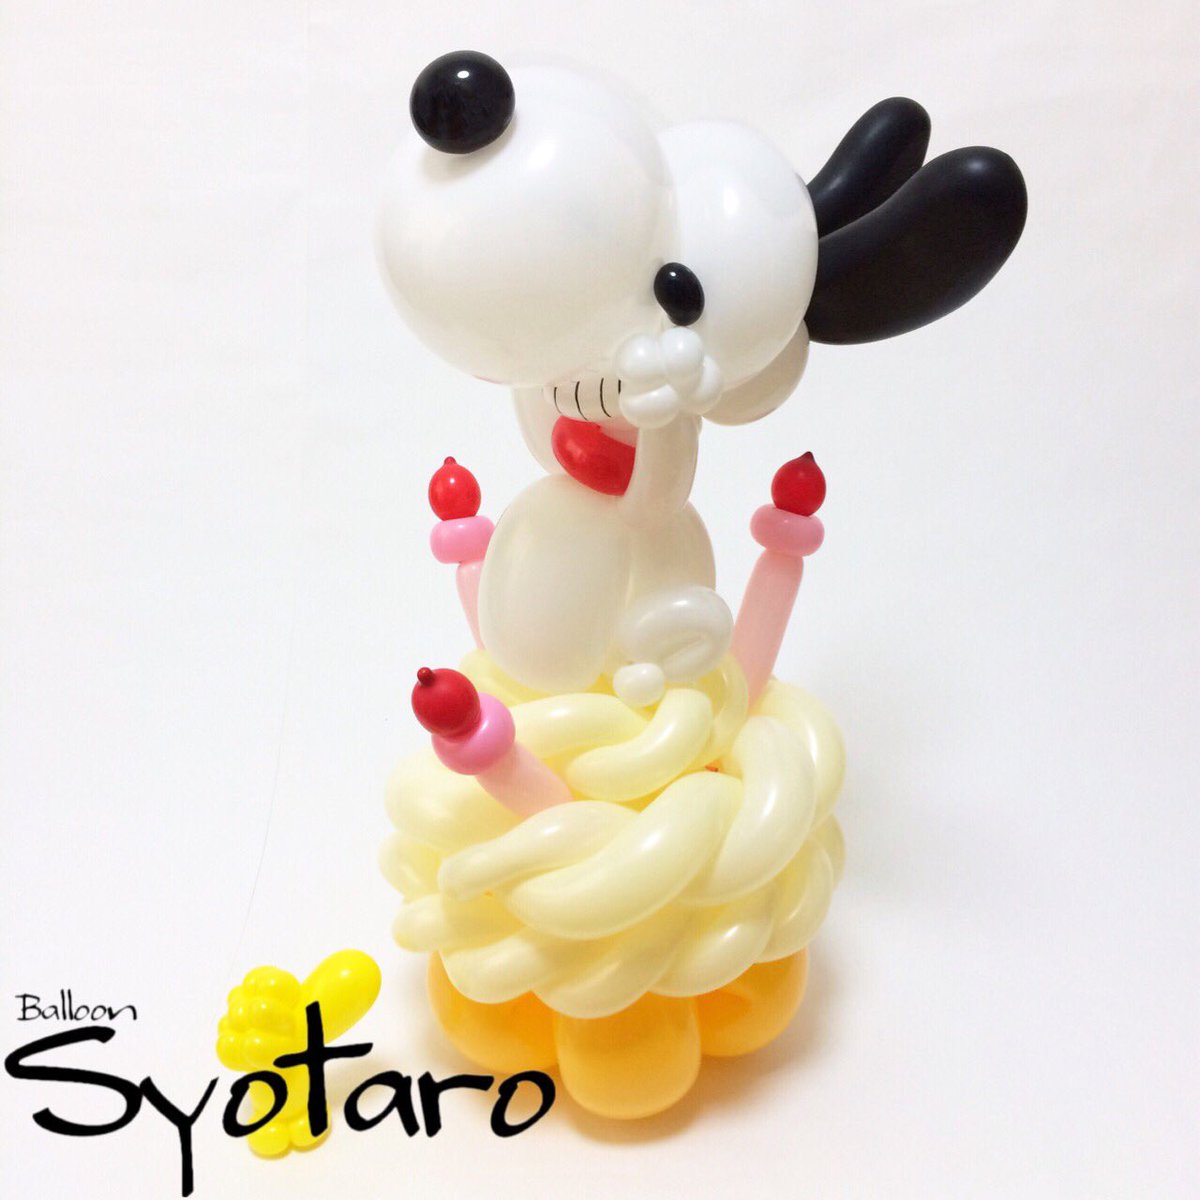 Balloon Syotaro En Twitter 18 5 10 スヌーピーのハッピーケーキパーティー 毎日バルーン スヌーピー 嬉しくなるとケーキにダイブしたくなるよね バルーンアート